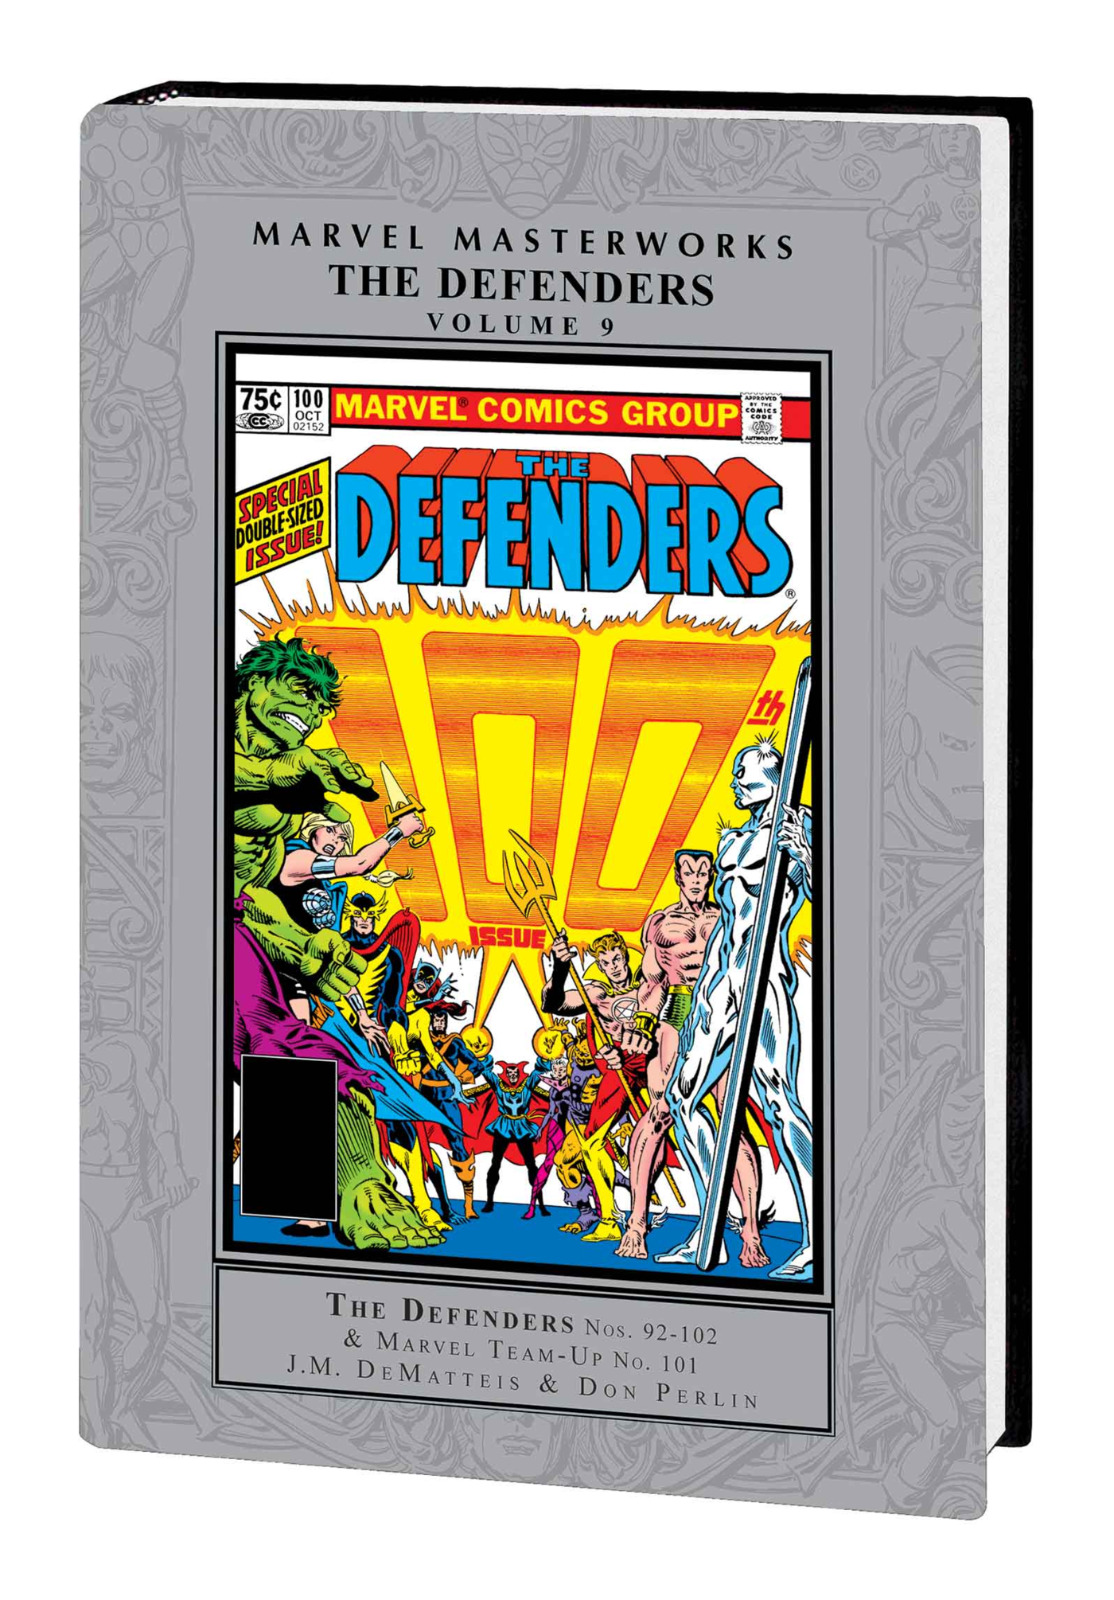 PRESALE Defenders Marvel Masterworks Vol 9 REGULAR COVER Sealed HC Marvel Comics